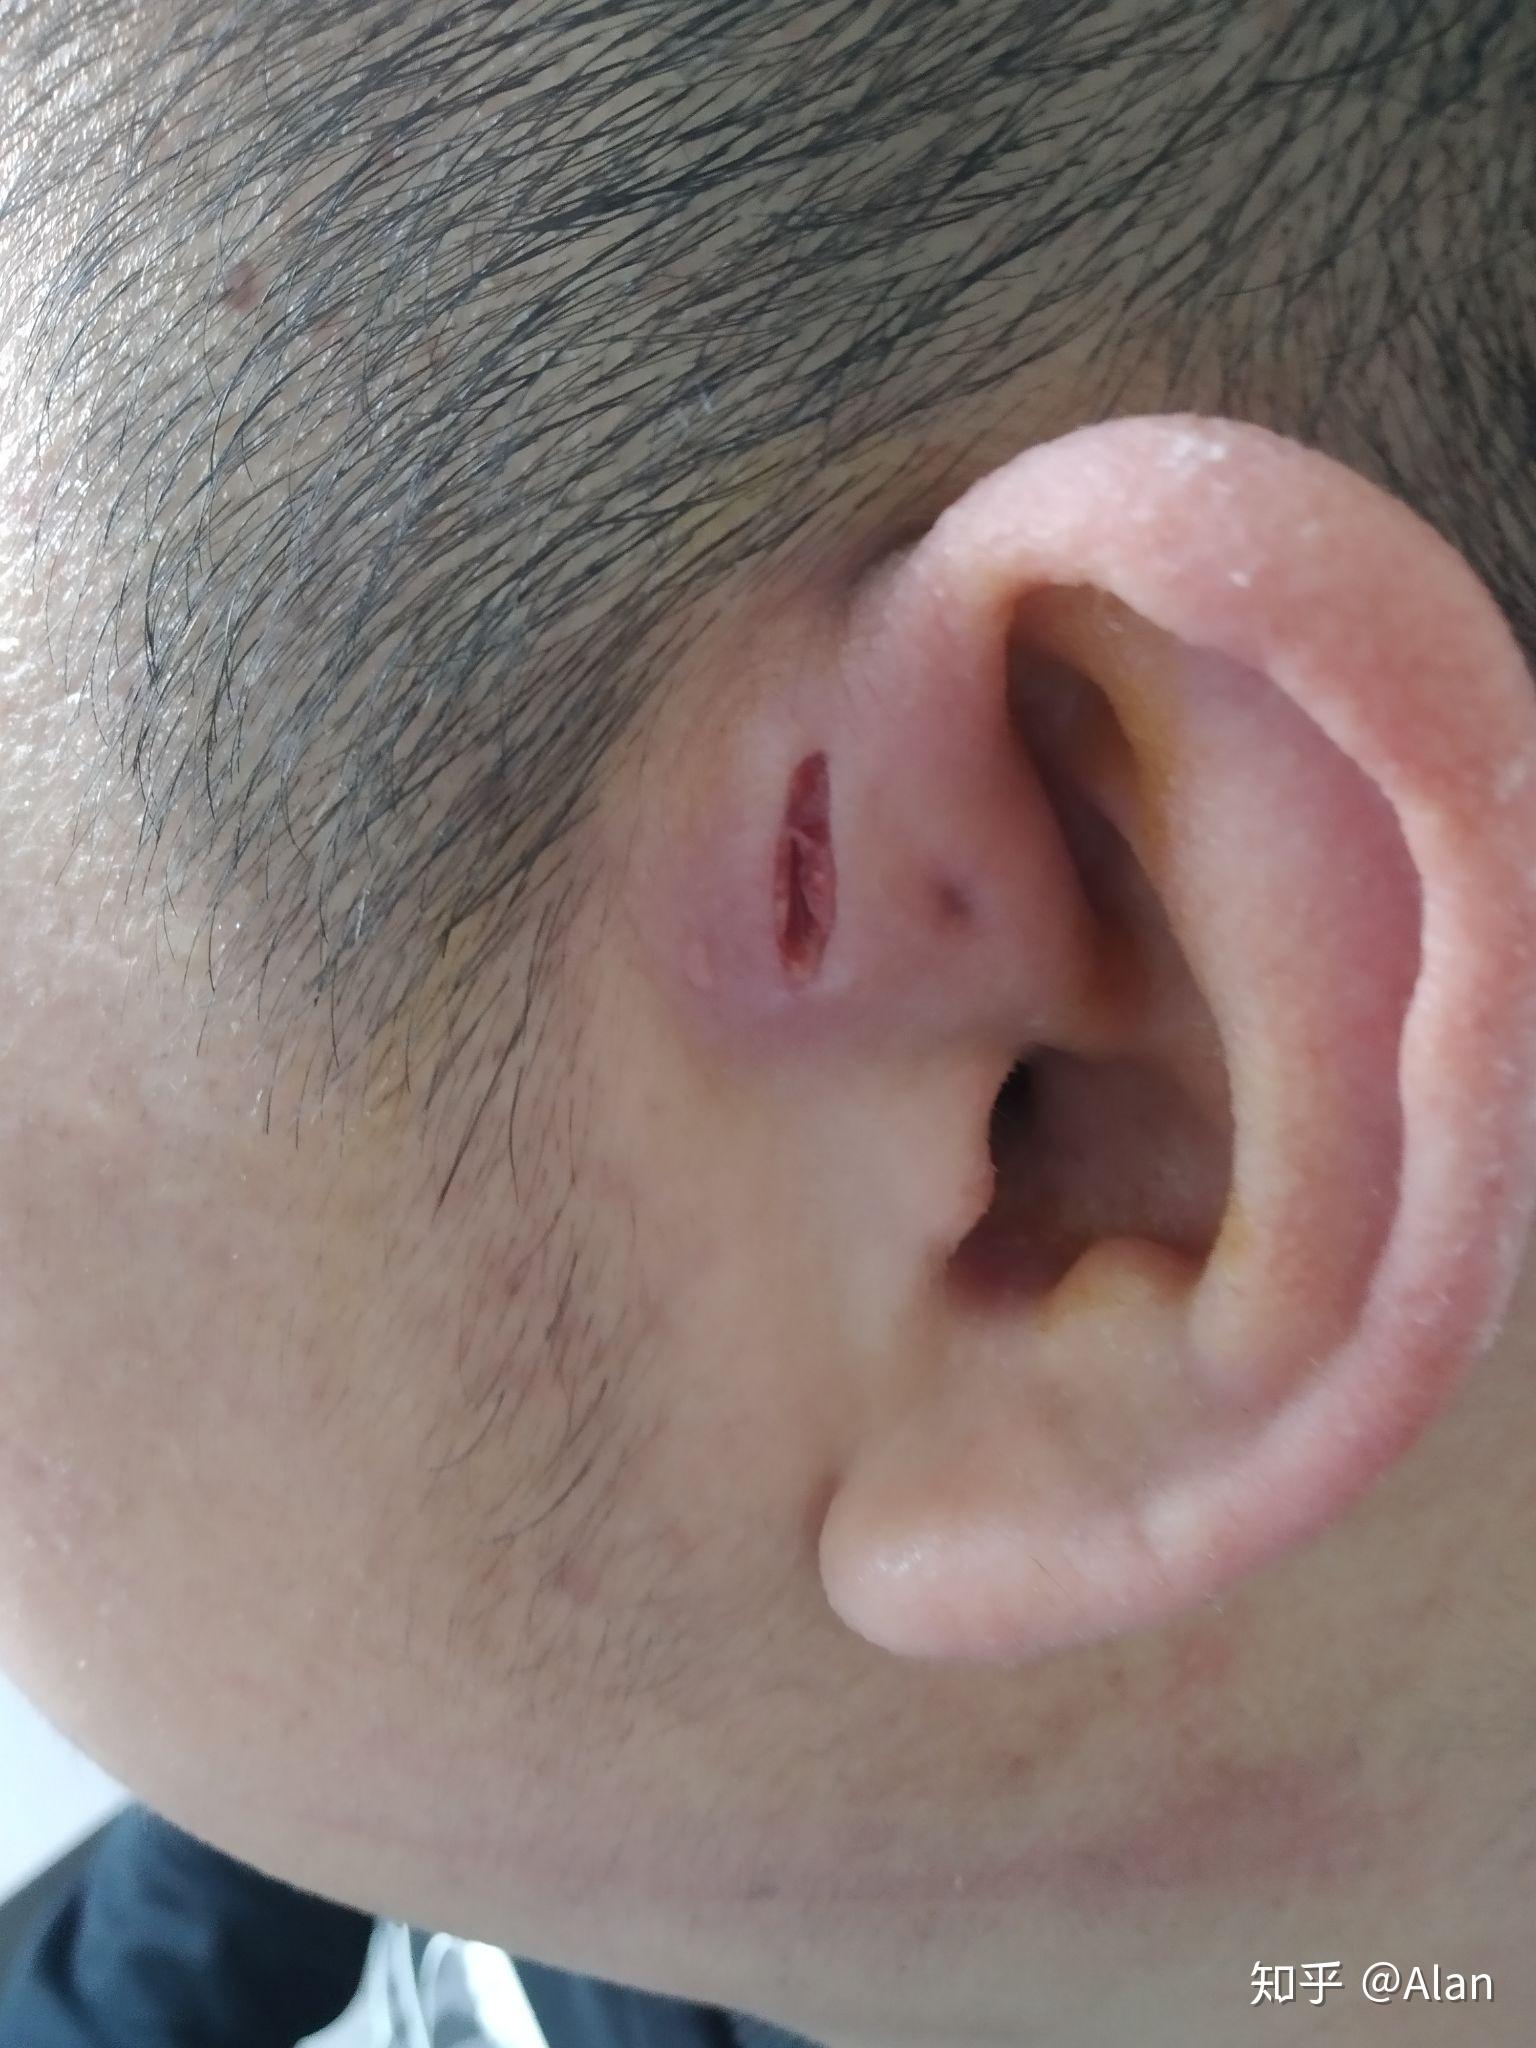 记录一下耳前瘘管发炎化脓,到手术摘除的过程 